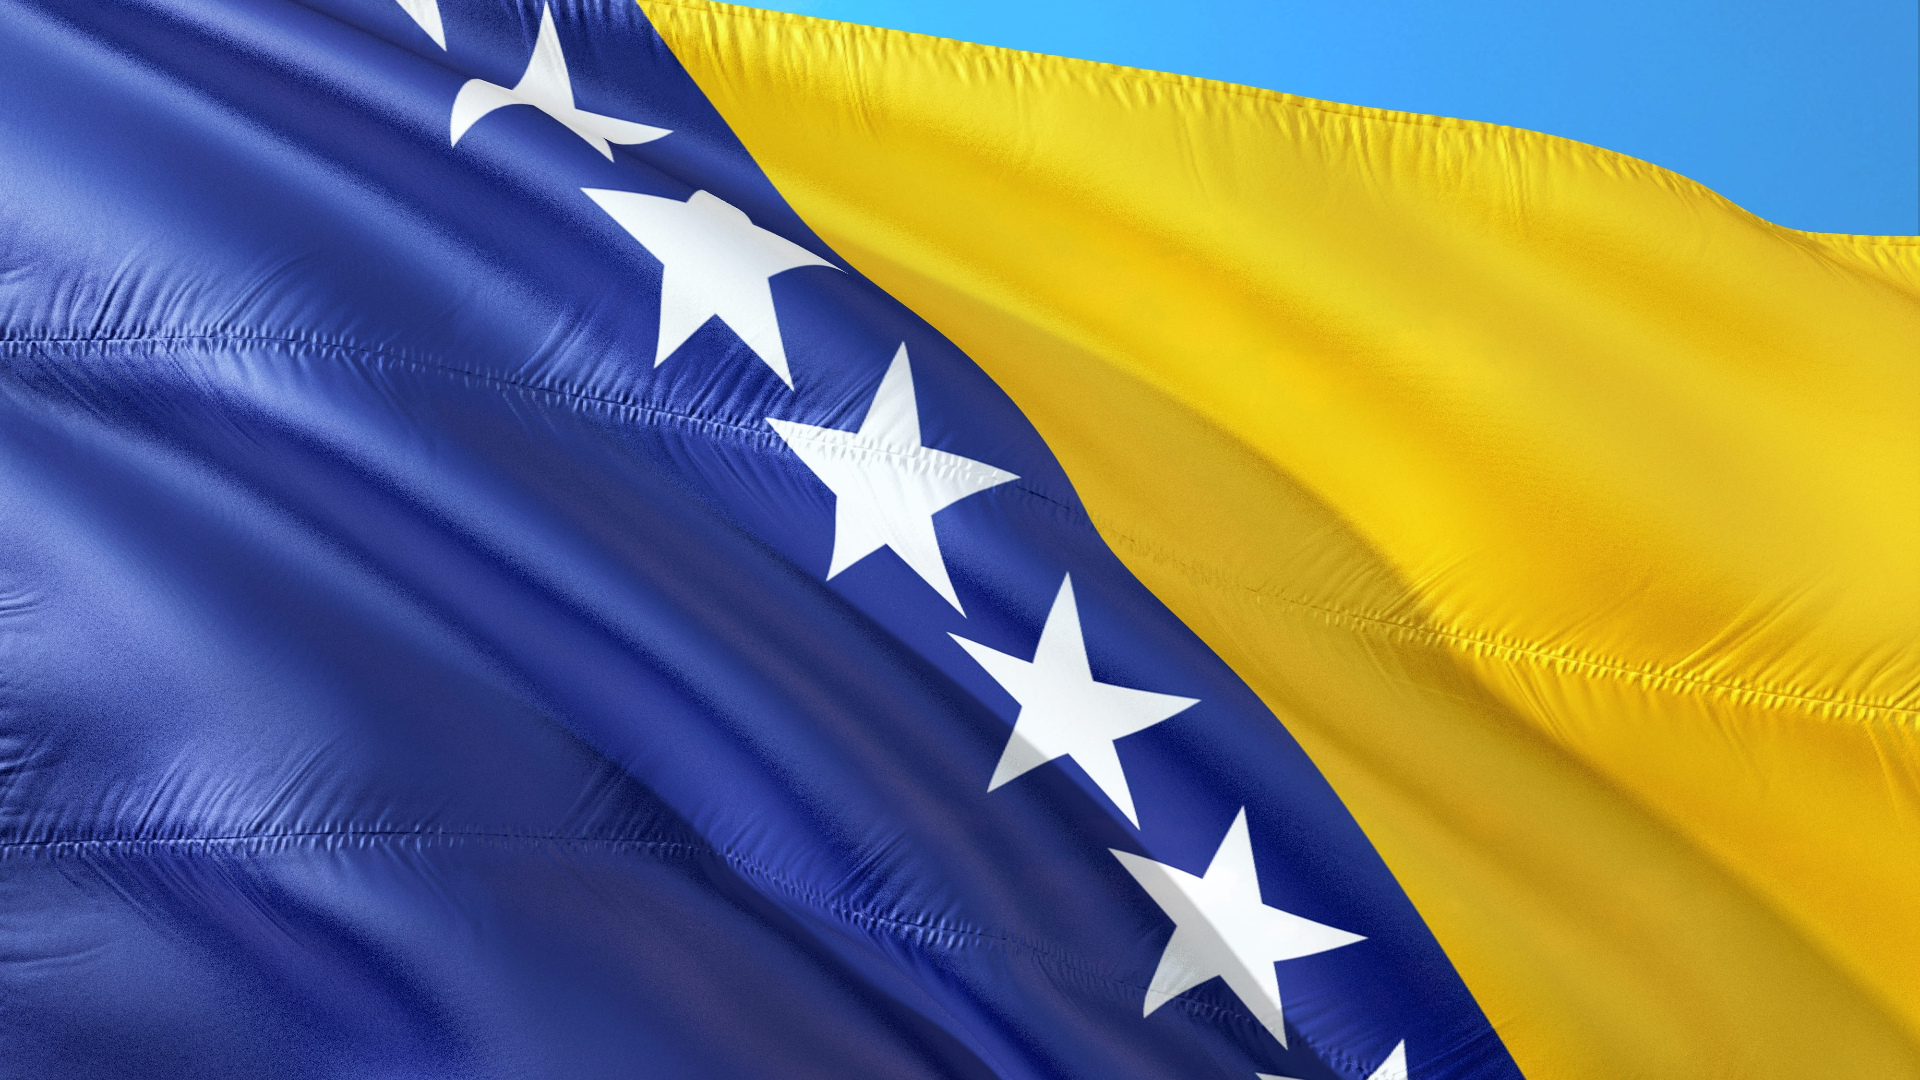 Přečtete si více ze článku Evropská rada rozhodla o zahájení přístupových rozhovorů s Bosnou a Hercegovinou